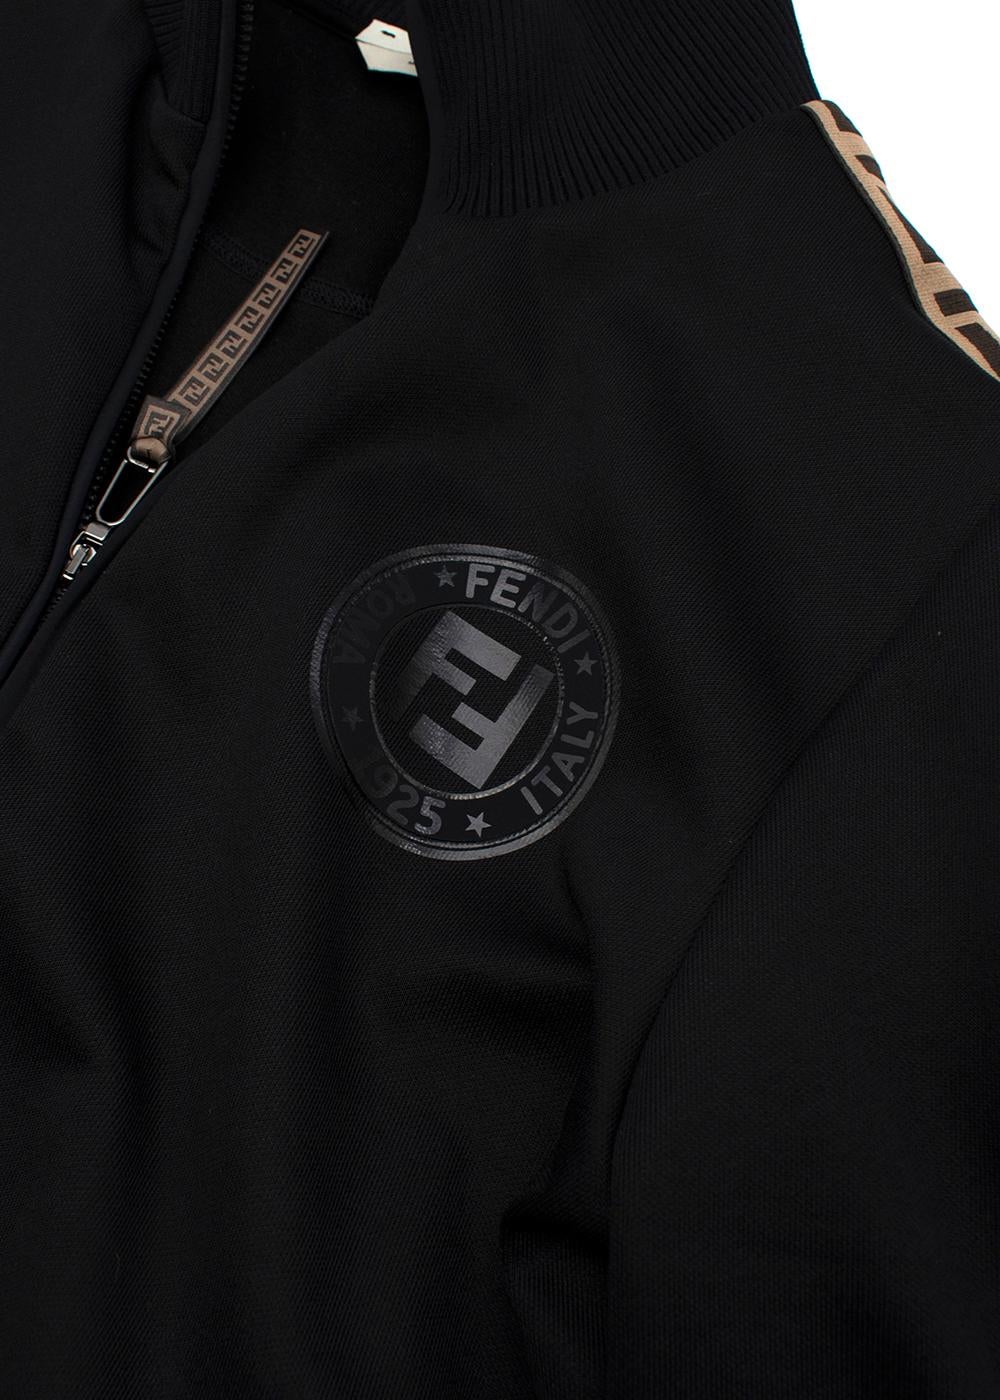 Fendi Black FF Trimmed Track Jacket (US 12) & Joggers (US 10) For Sale 1